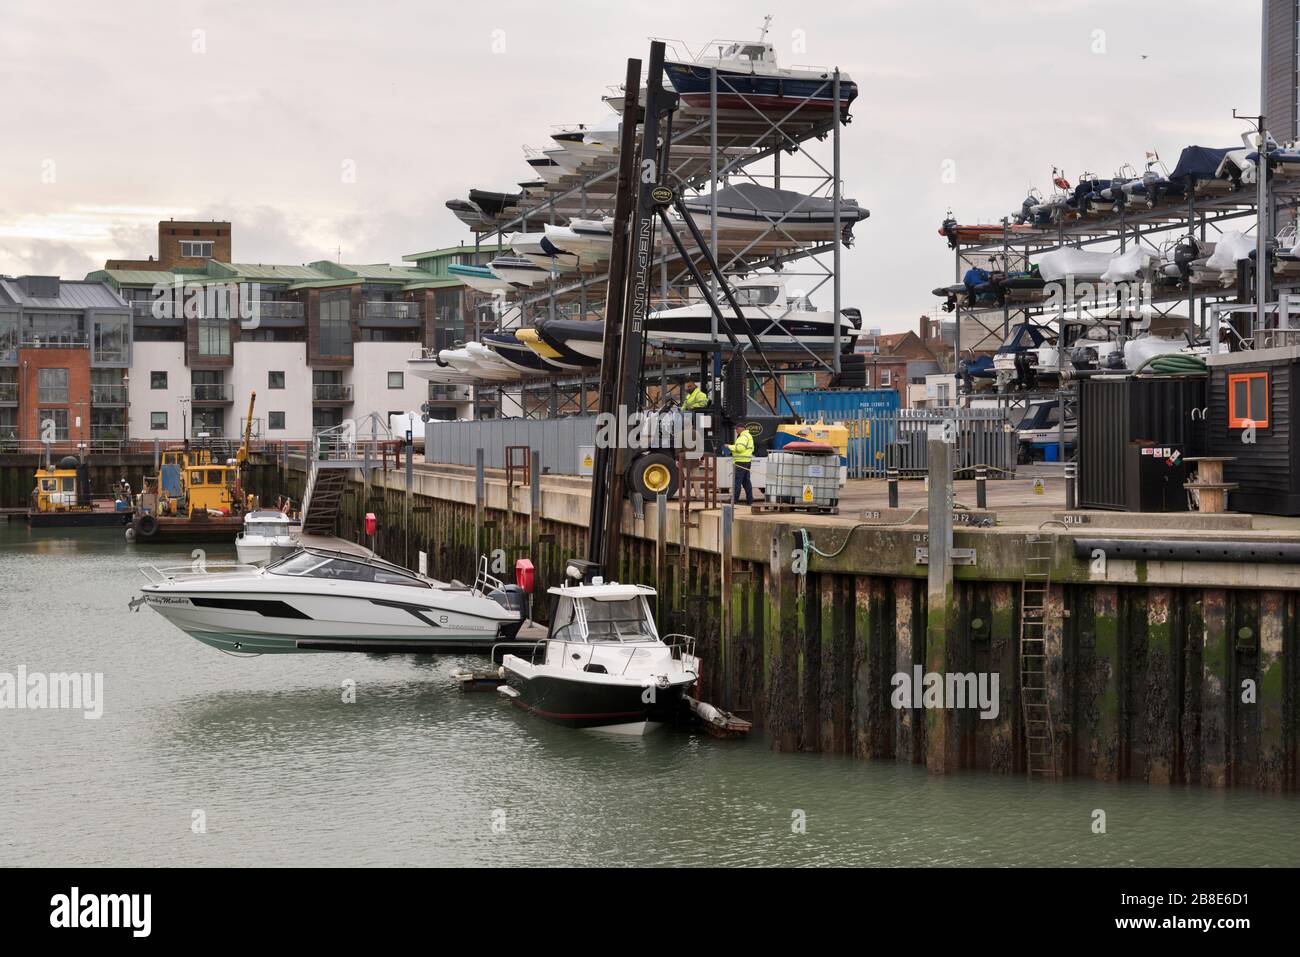 Blick auf die Lagerregale und ein Boot, das vom Wasser gehoben wird, am Camber Dock, Portsmouth, Großbritannien Stockfoto